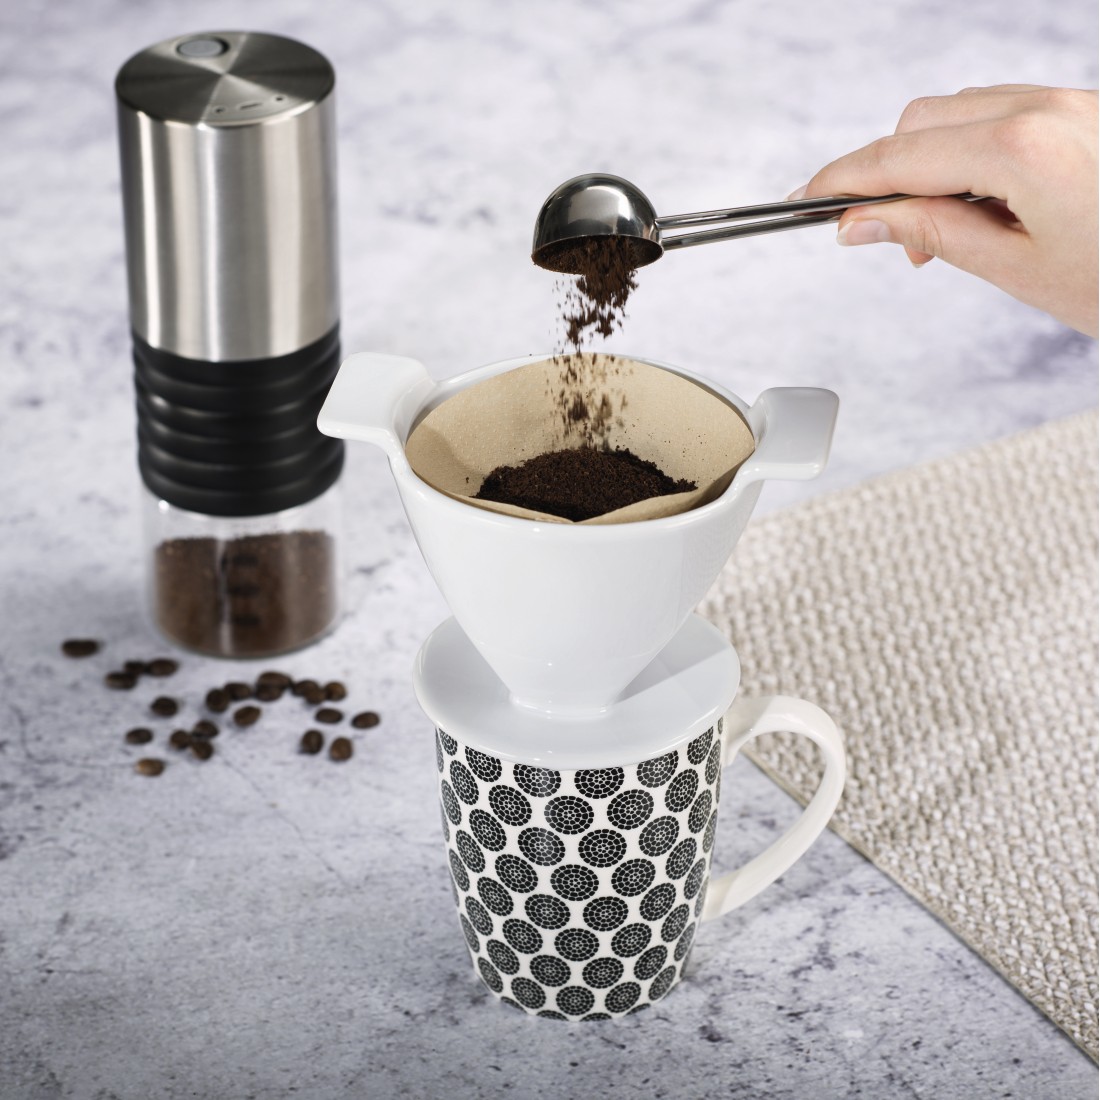 awx3 Druckfähige Anwendung 3 - Xavax, Kaffeefilter aus Porzellan, Größe 4, Weiß